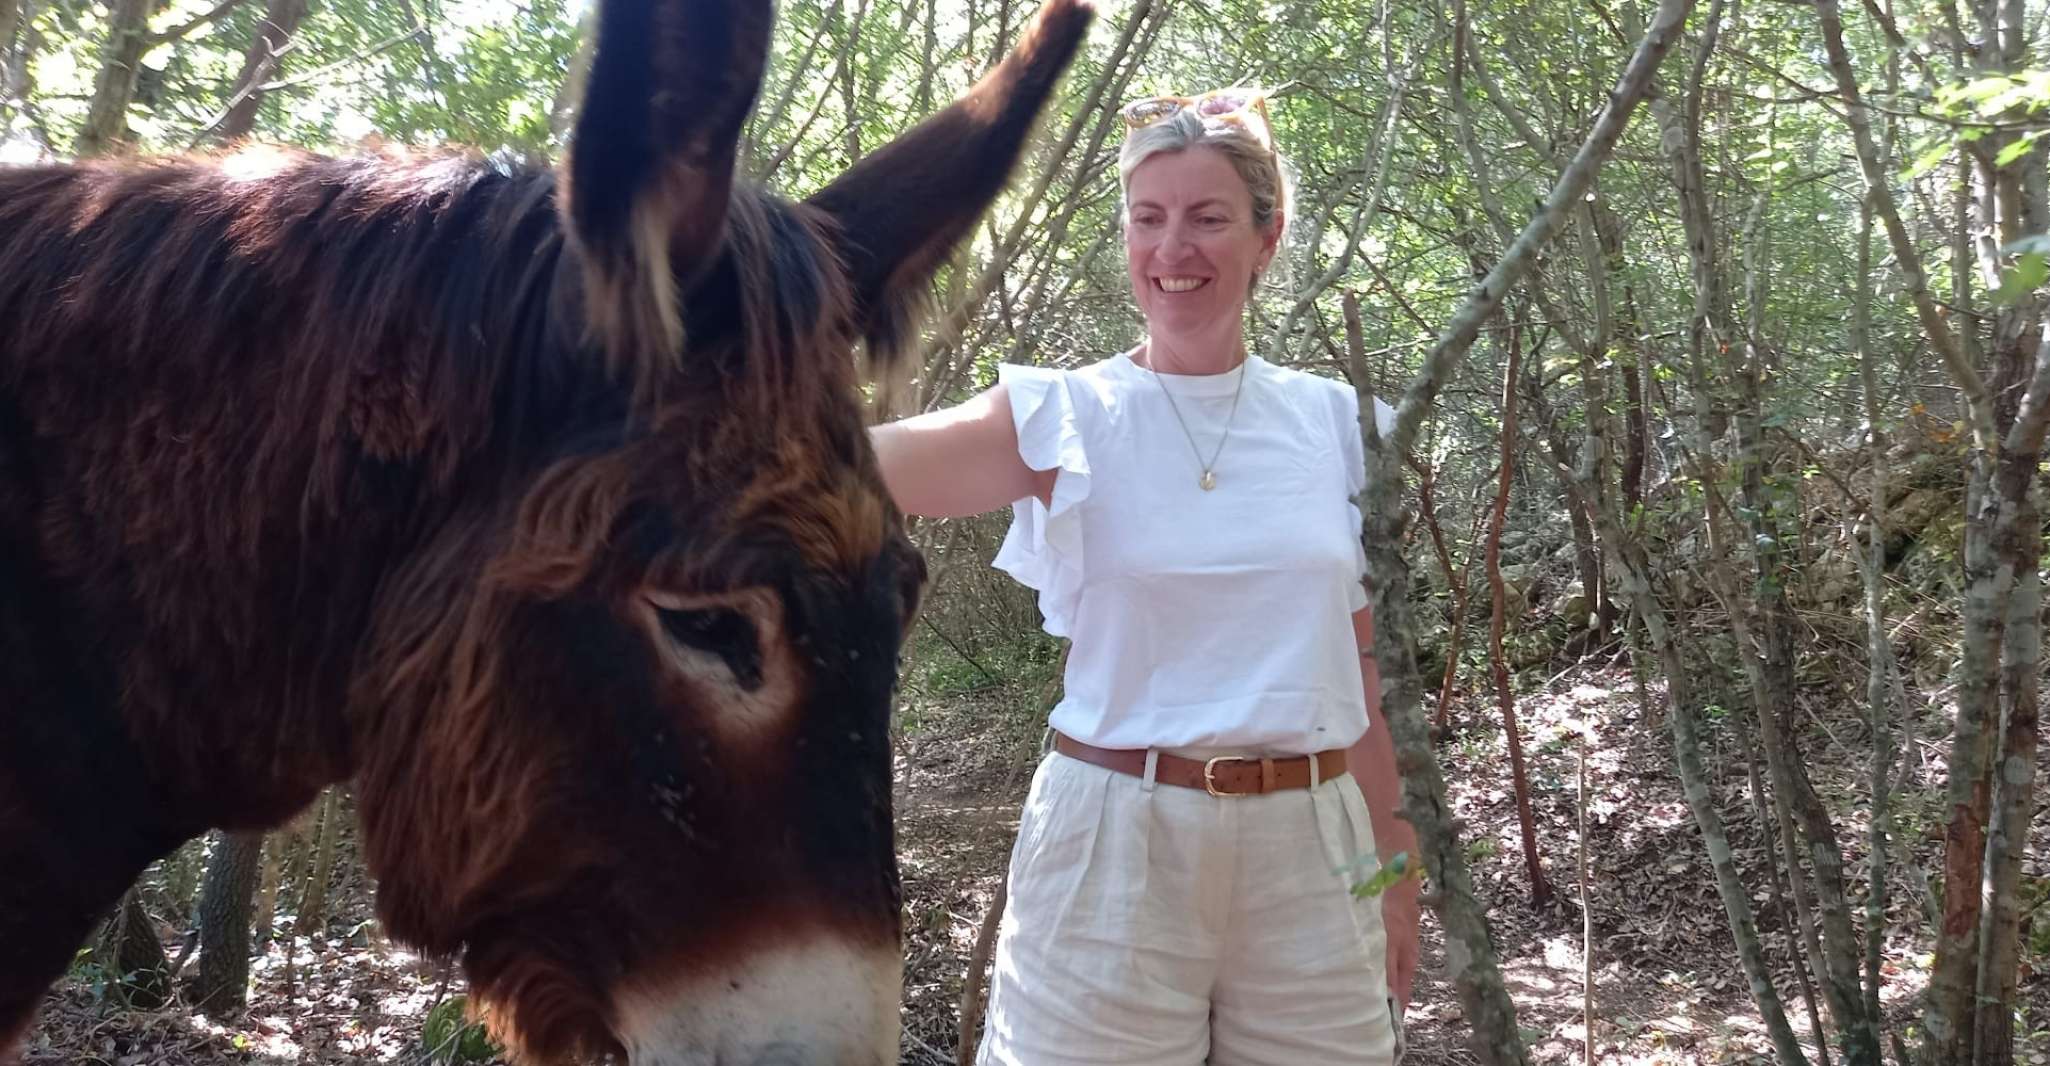 Alberobello e-bike tour with visit to a donkey farm - Housity